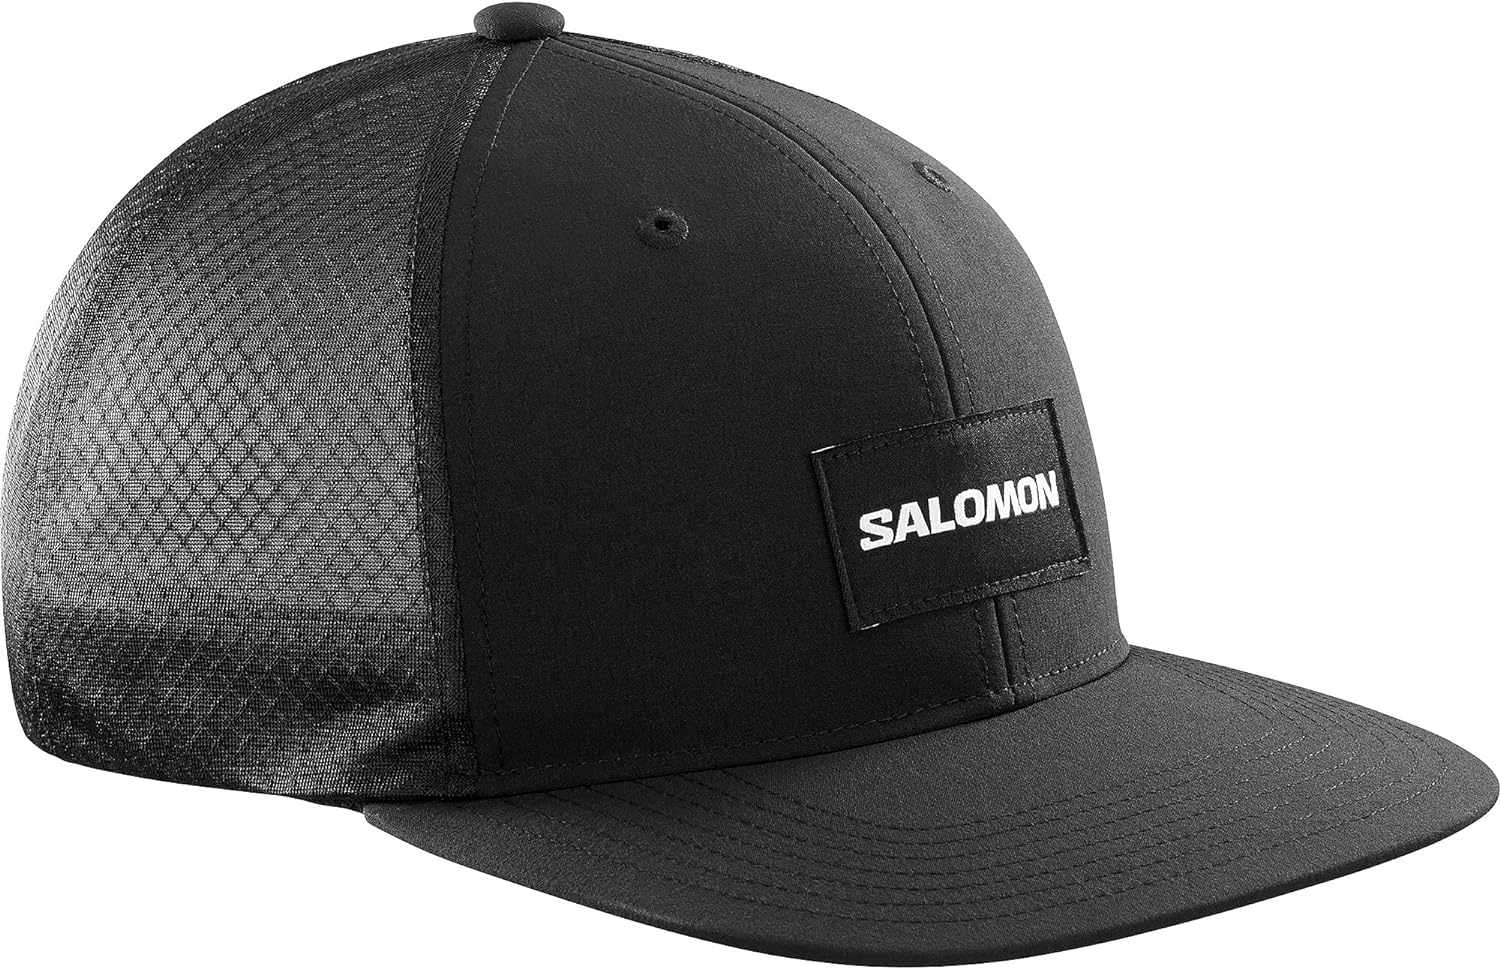 SALOMON TRUCKER FLAT CAP